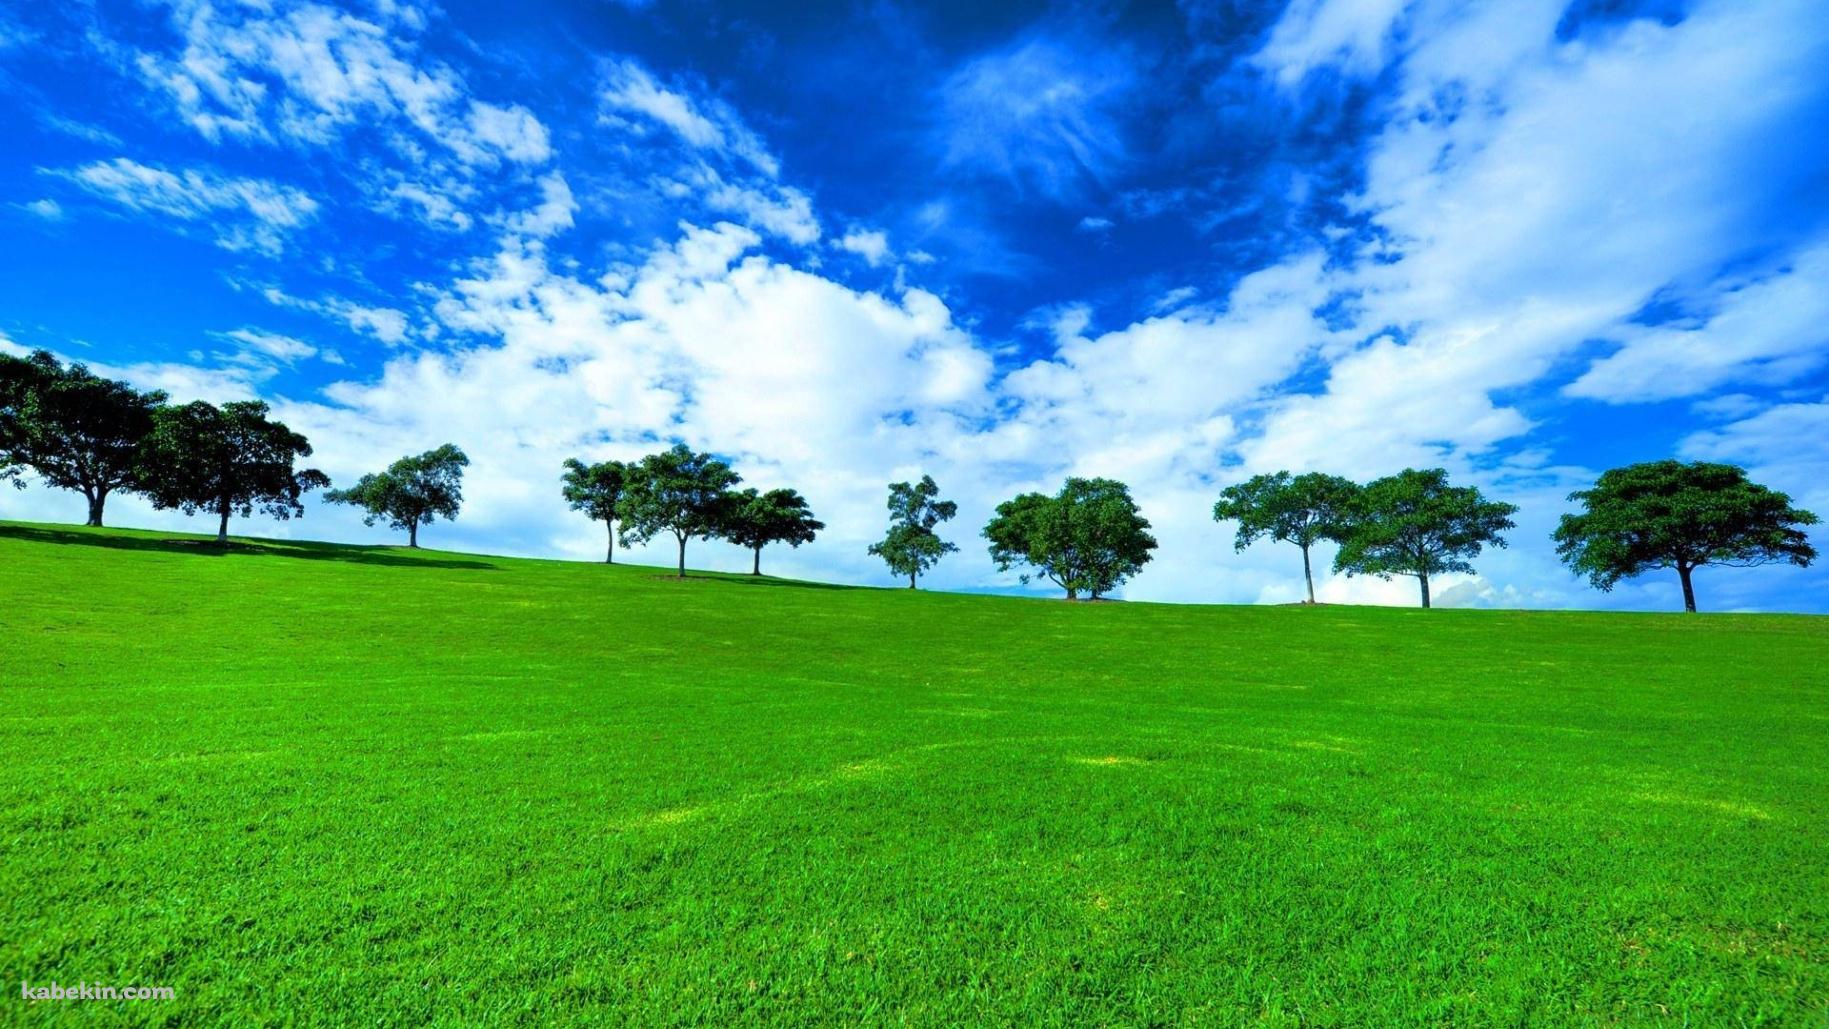 絶景 緑の草原と青い空の壁紙(1829px x 1029px) 高画質 PC・デスクトップ用